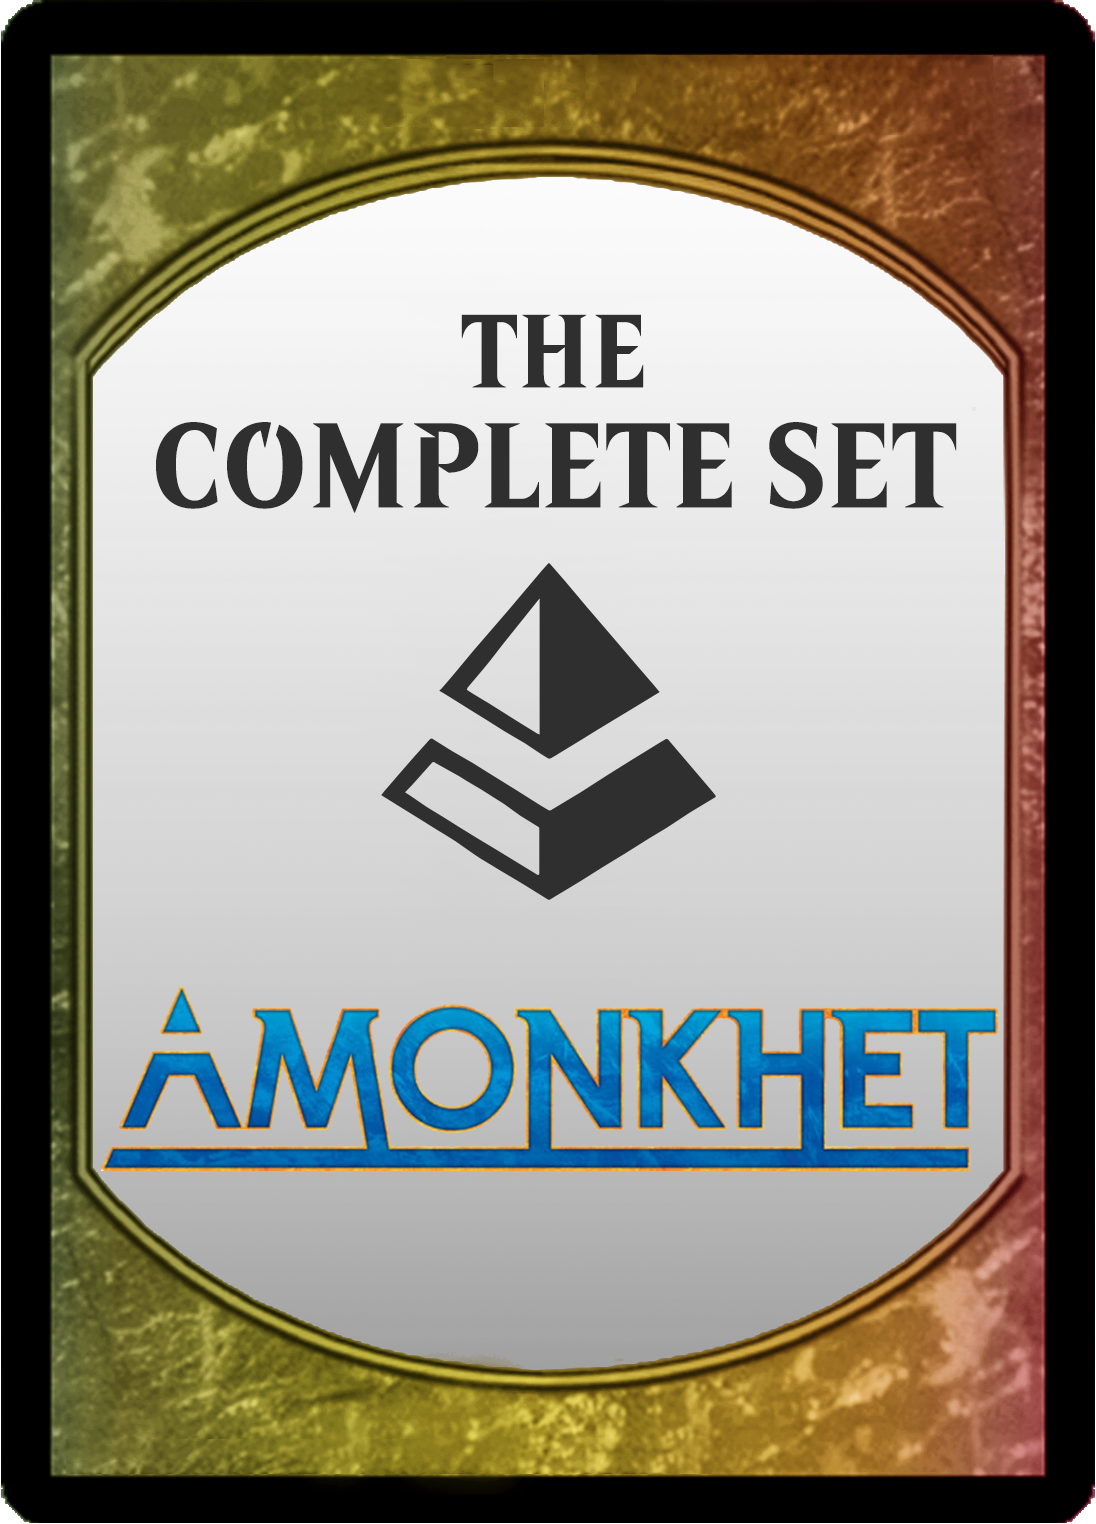 Set completo de Amonkhet